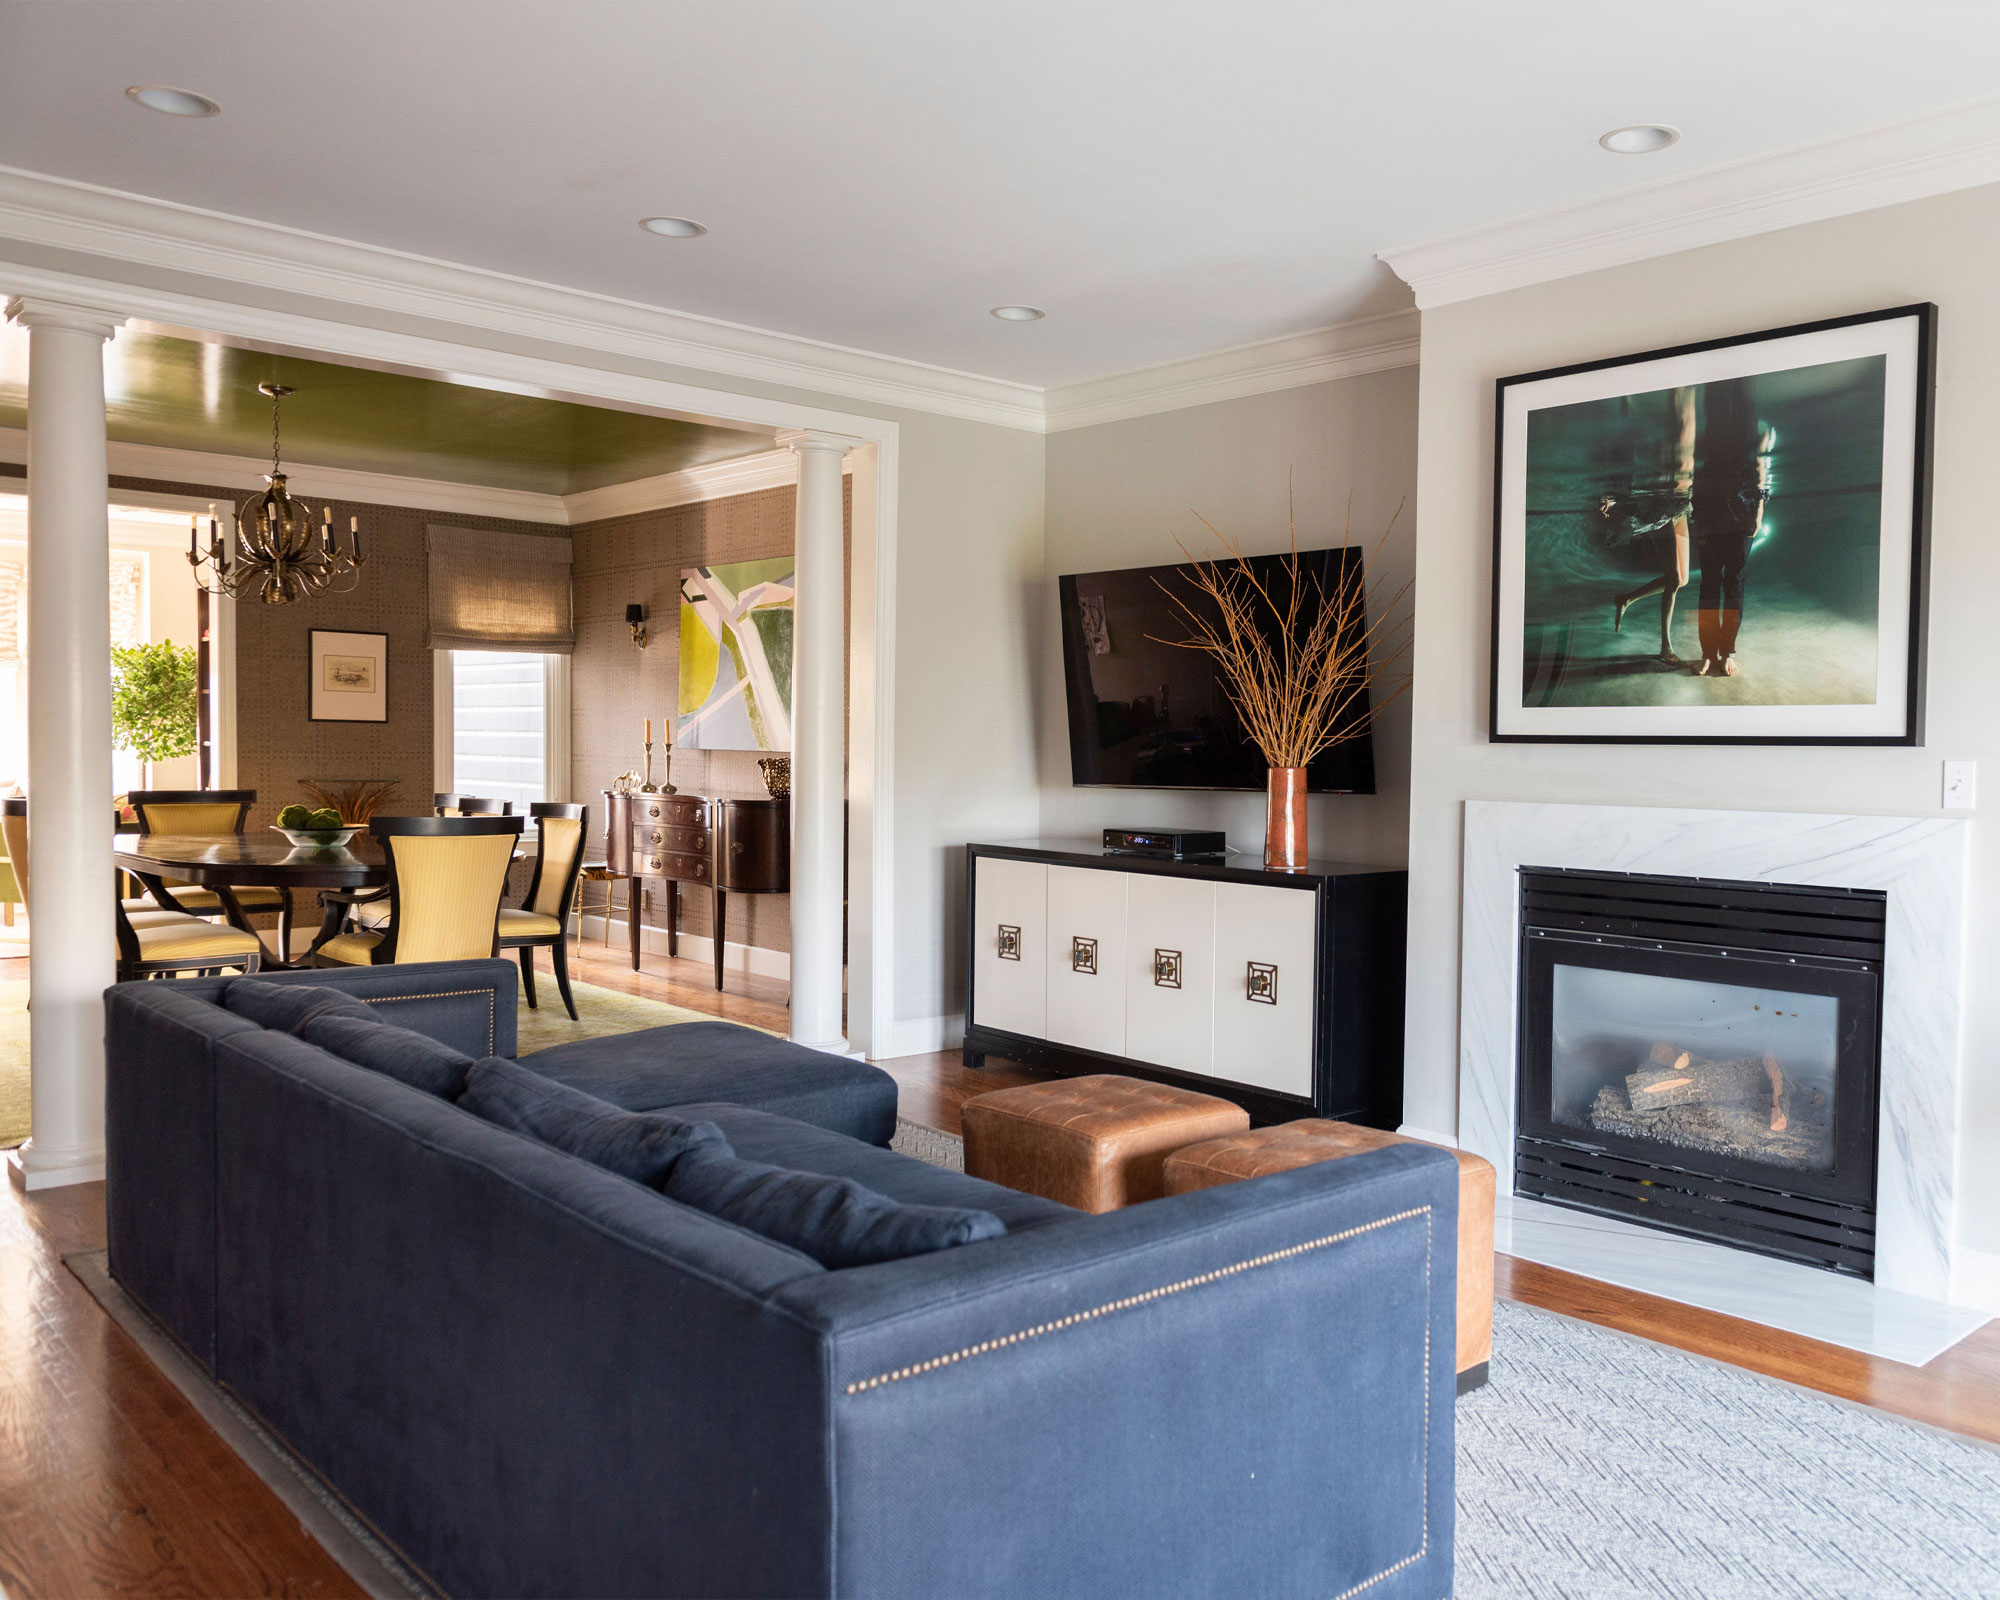 Moderna sala de estar y comedor de planta abierta, TV en la pared, aparador, chimenea, sofá azul, dos pufs de cuero